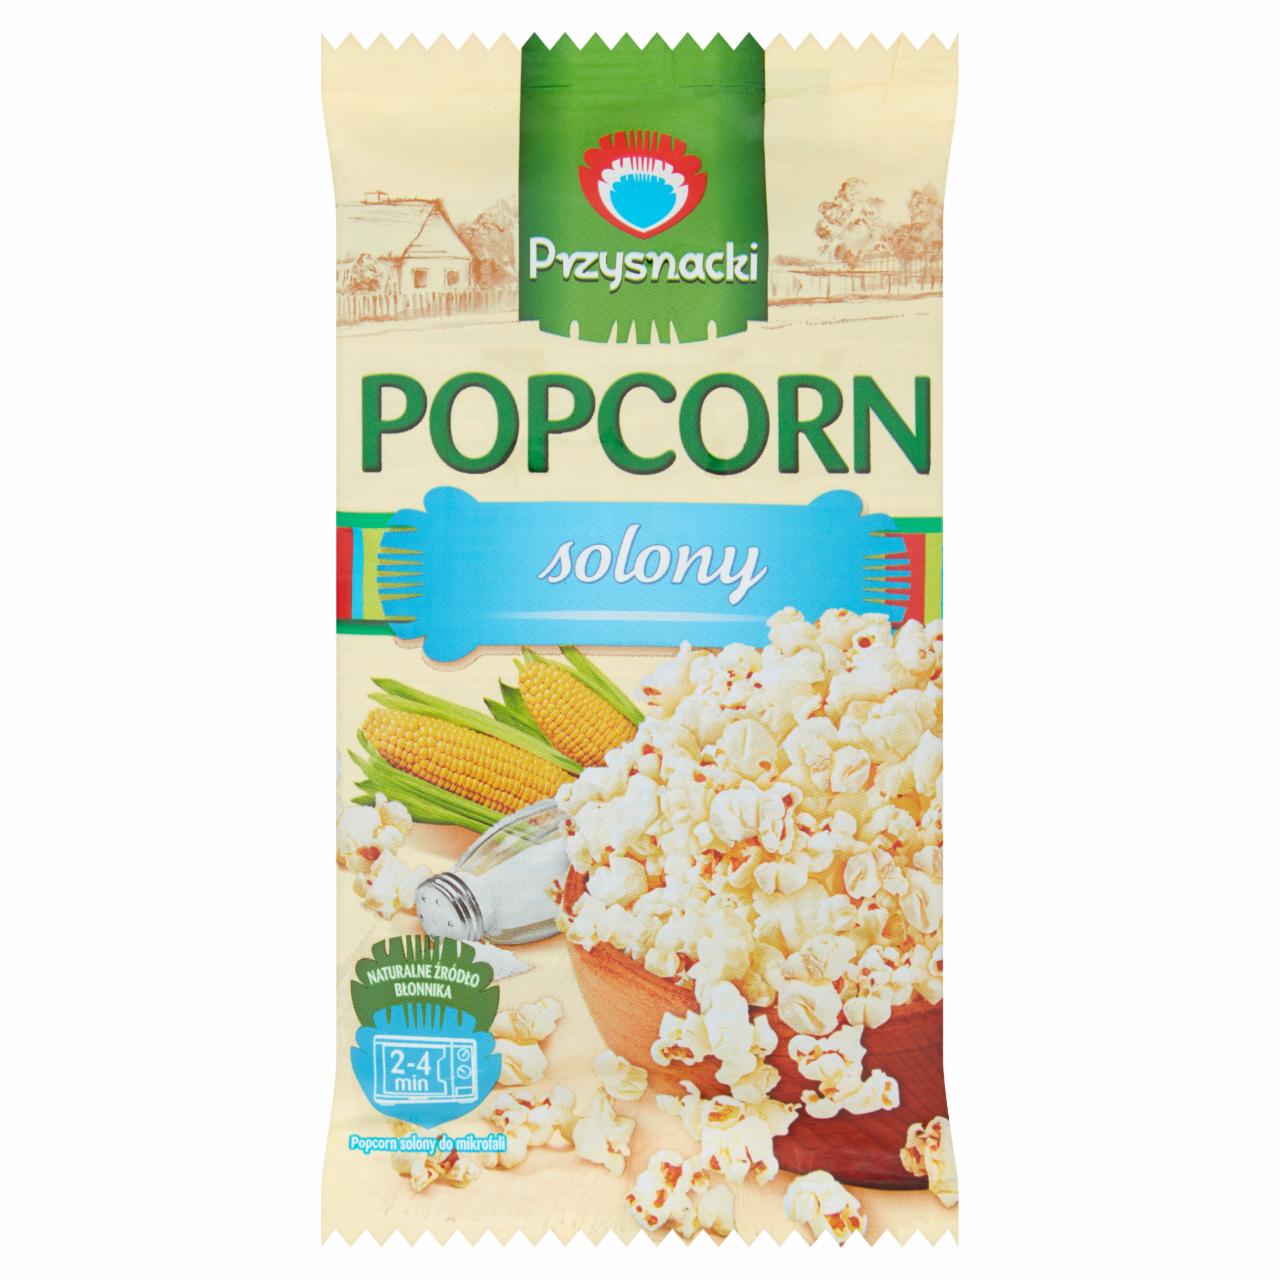 Zdjęcia - Przysnacki Popcorn do mikrofali solony 100 g